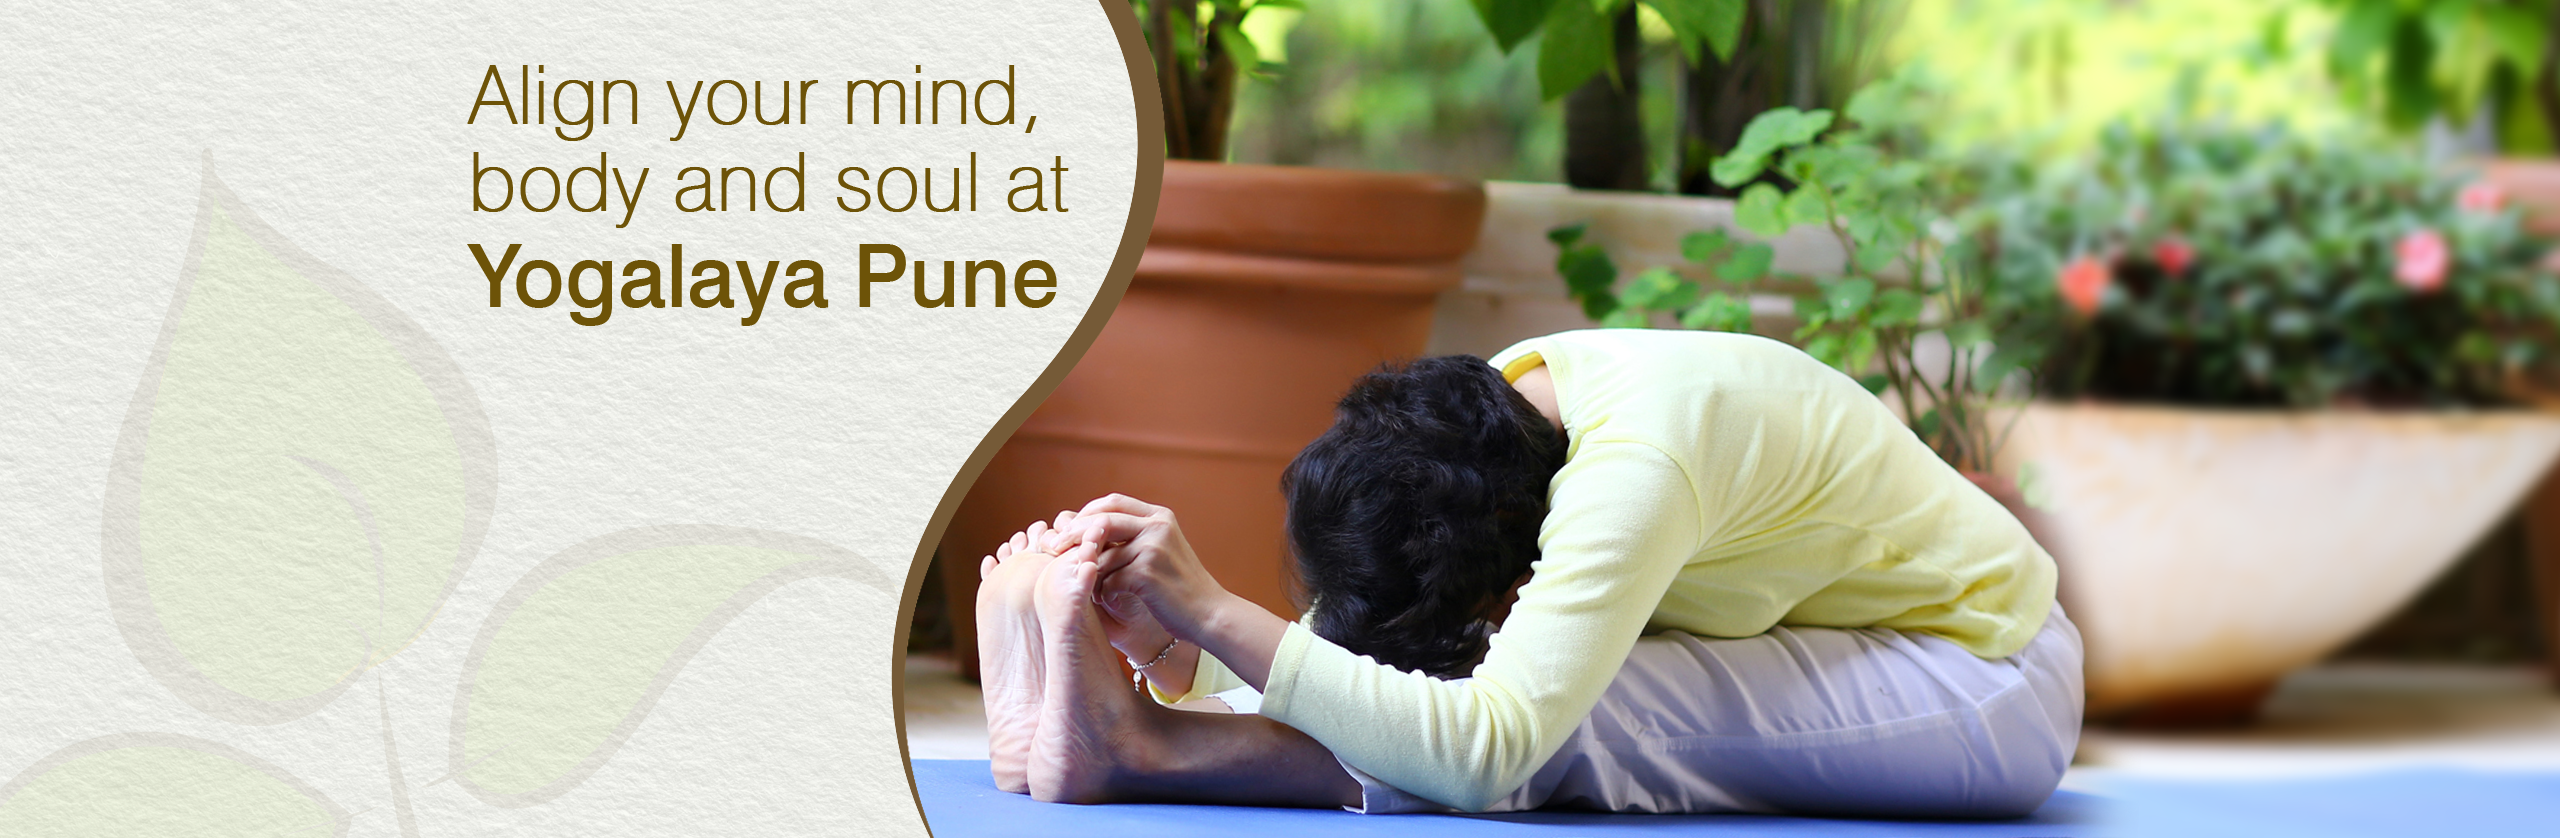 Rupa Kanade performing a yoga pose at Yogalaya Pune